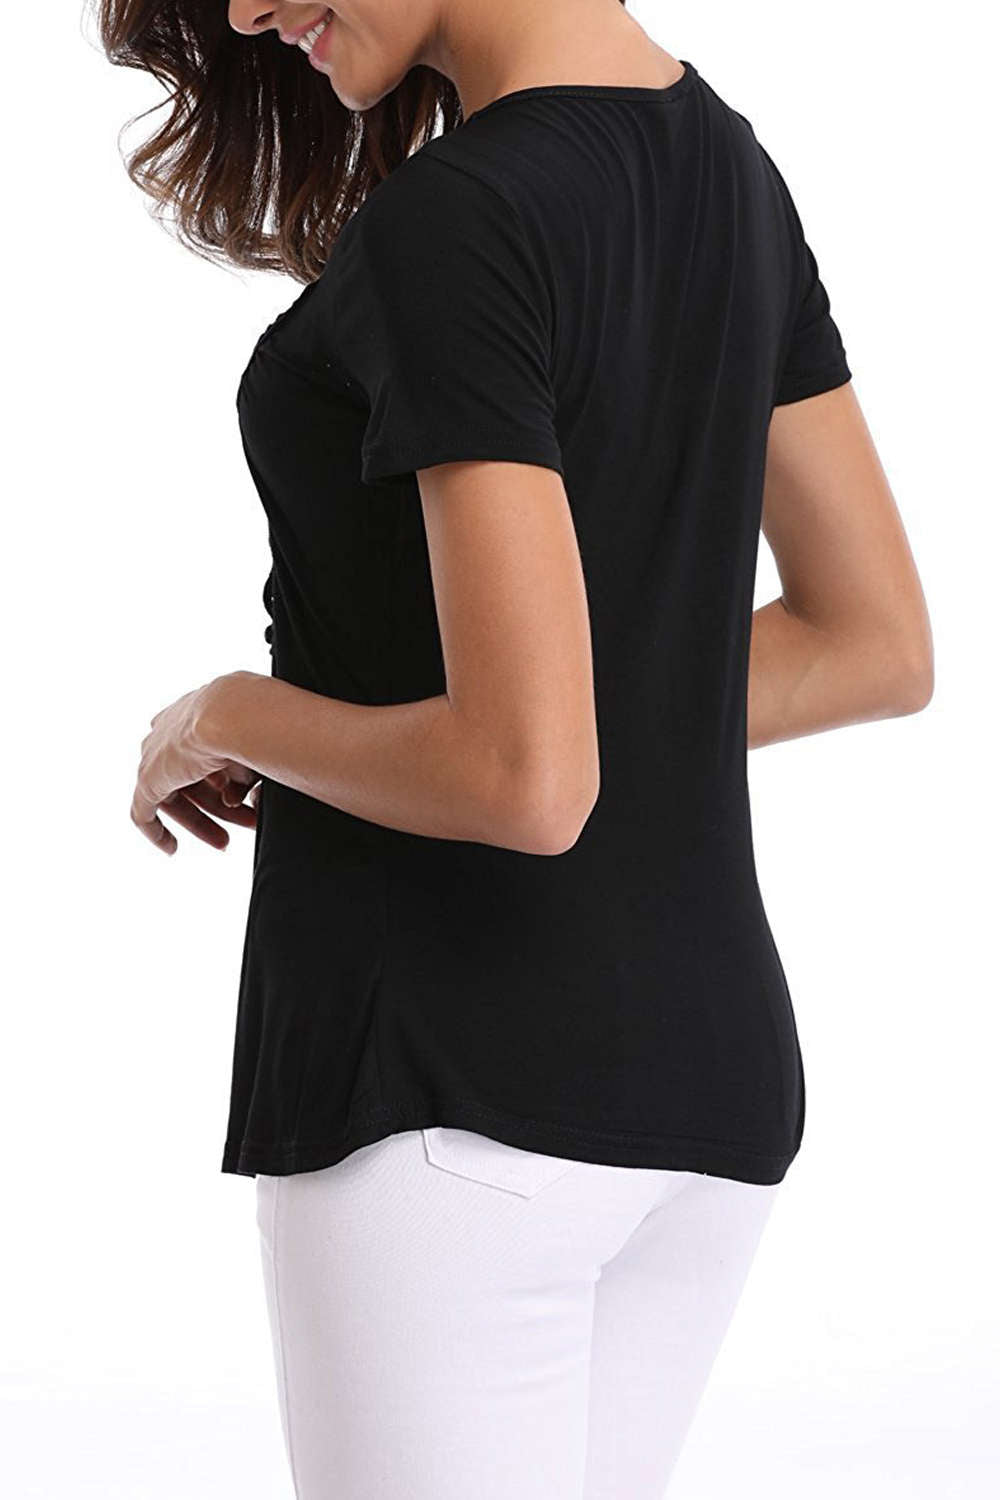 Iyasson Lace Panel V Neck Short Sleeve T Shirt